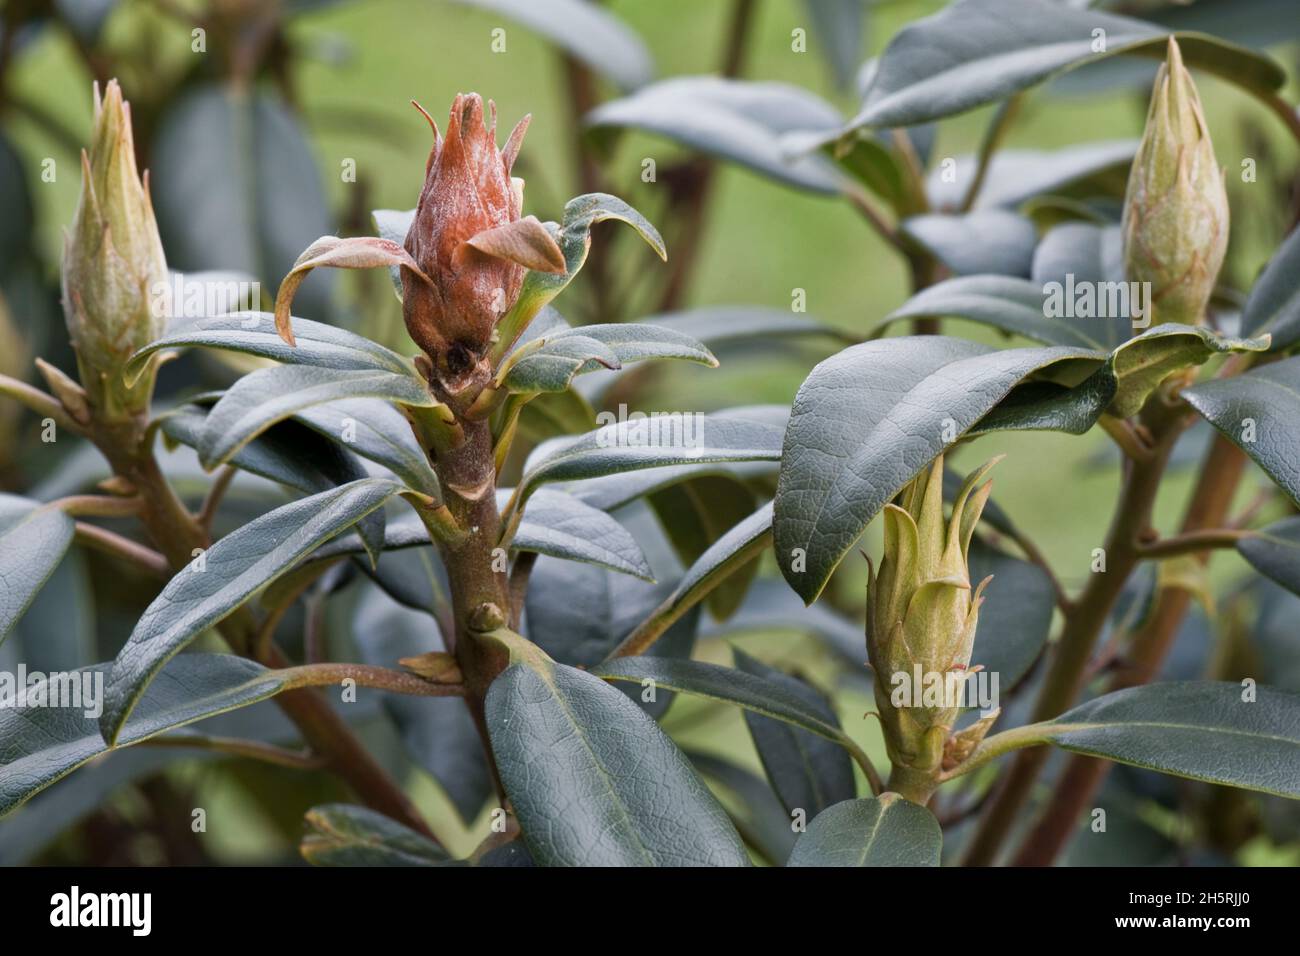 Germoglio blasto (Pycnostysanus azaleae) morto, marrone, abortito, germoglio di fiori malato con foglie sane, Berkshire, marzo Foto Stock